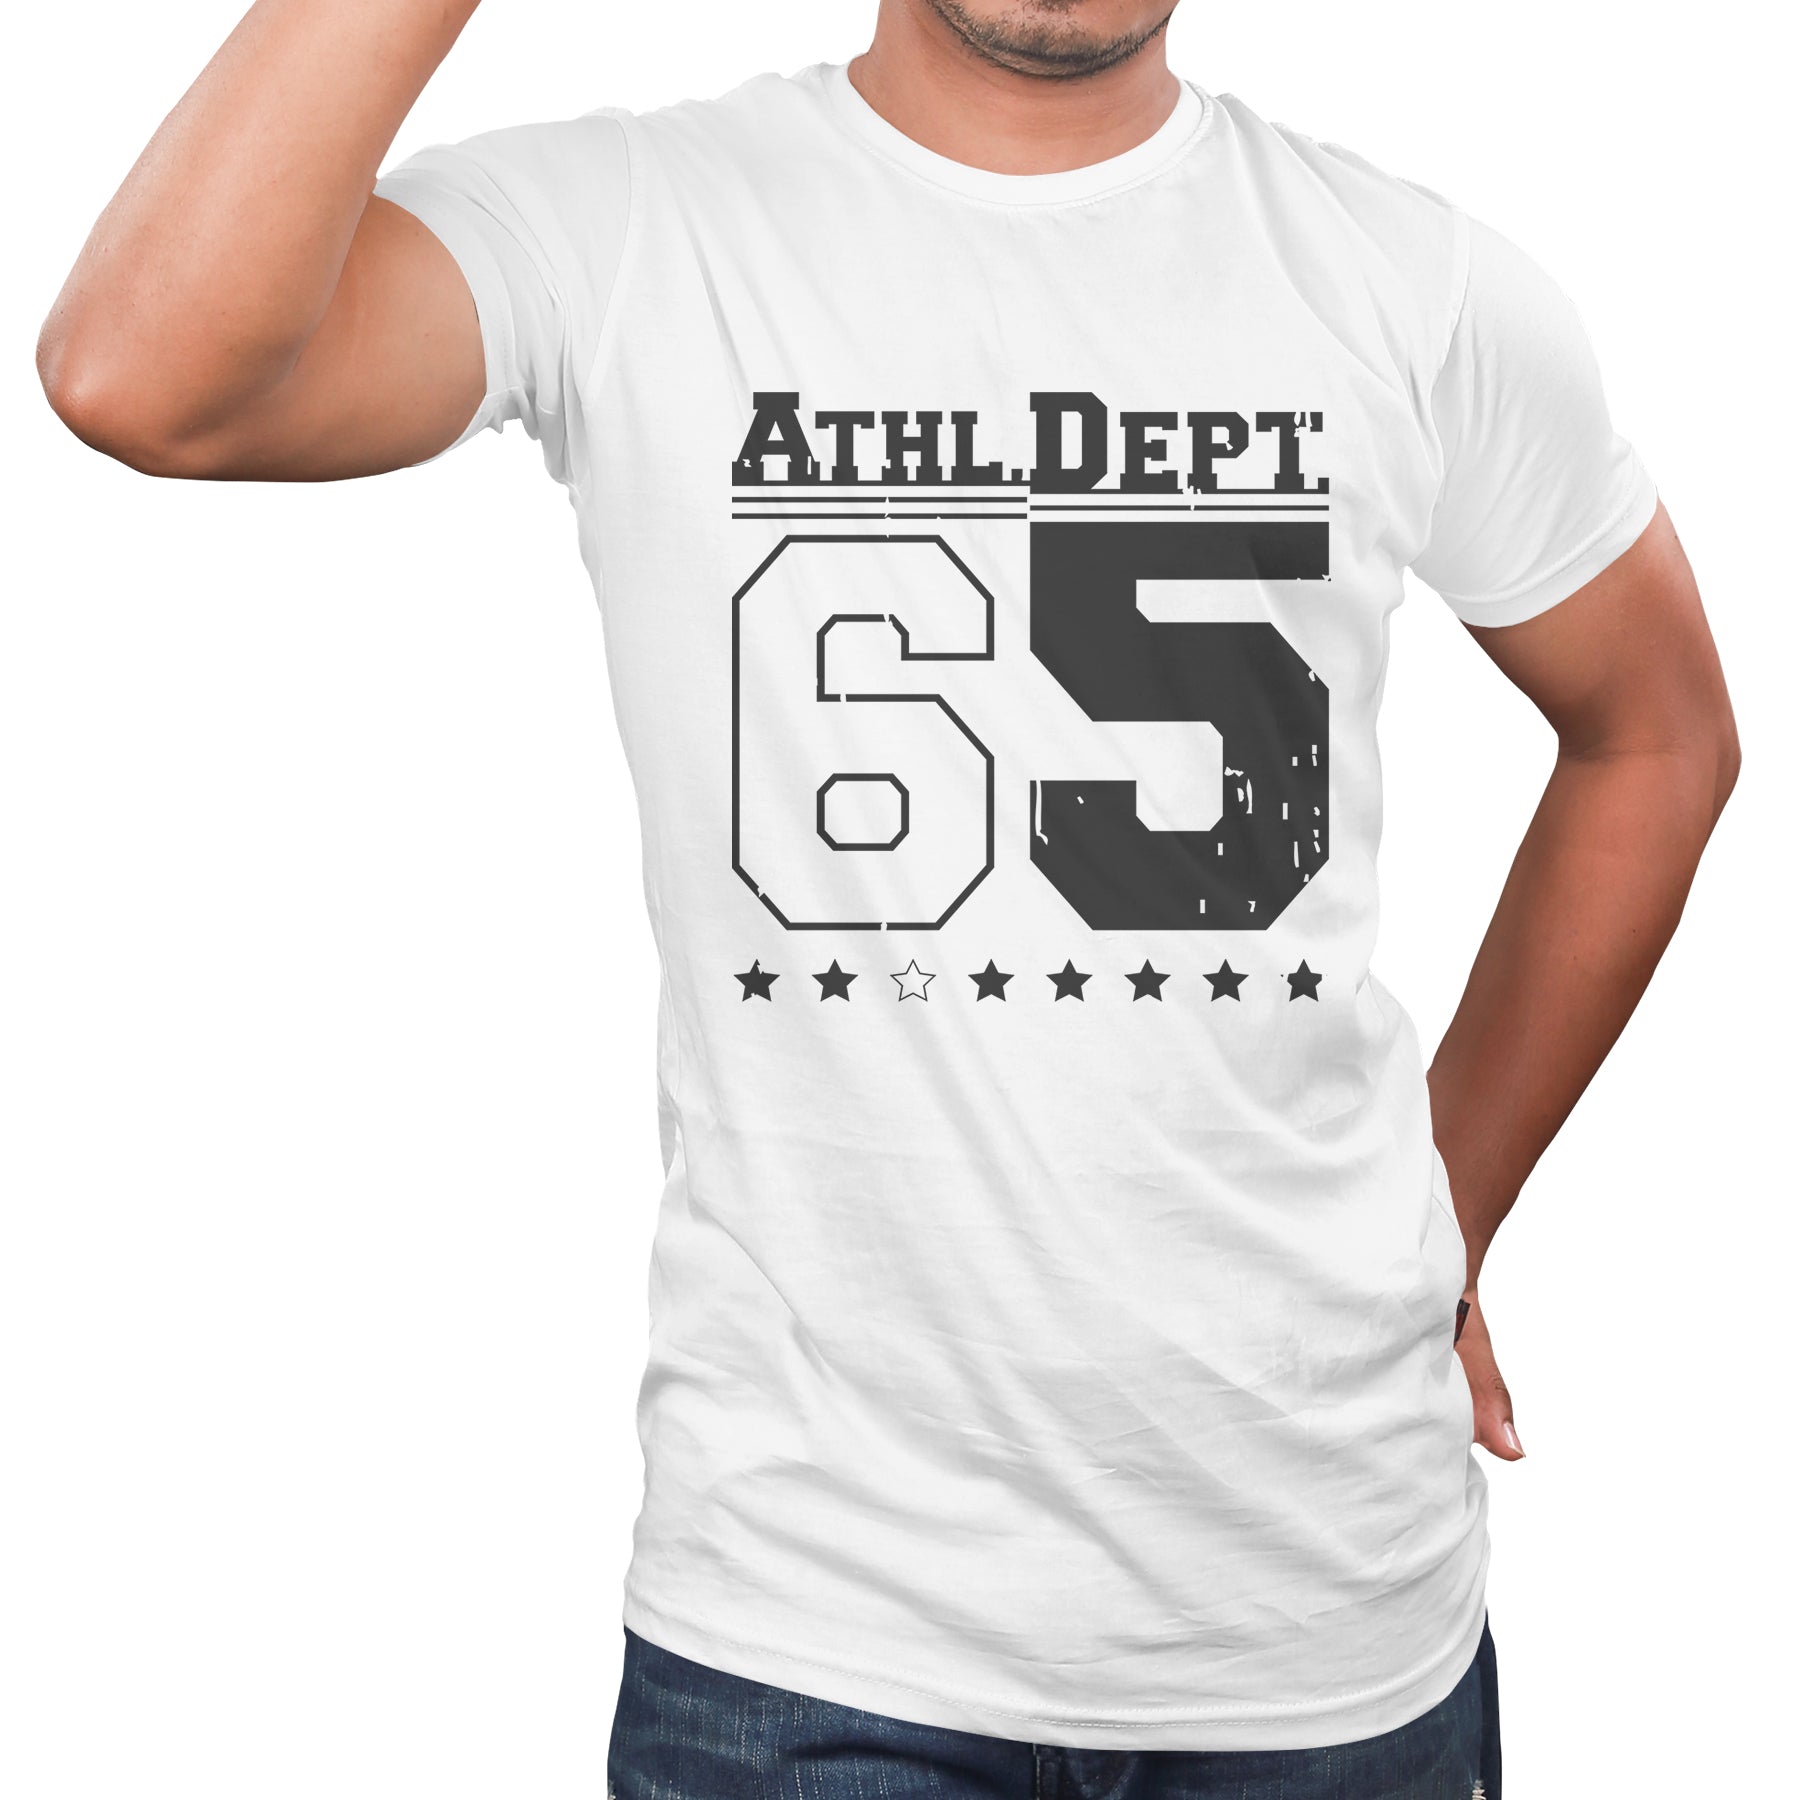 two digits tshirts, no.65 t shirt, no. themed t shirts for boys, digit t shirt - White 01